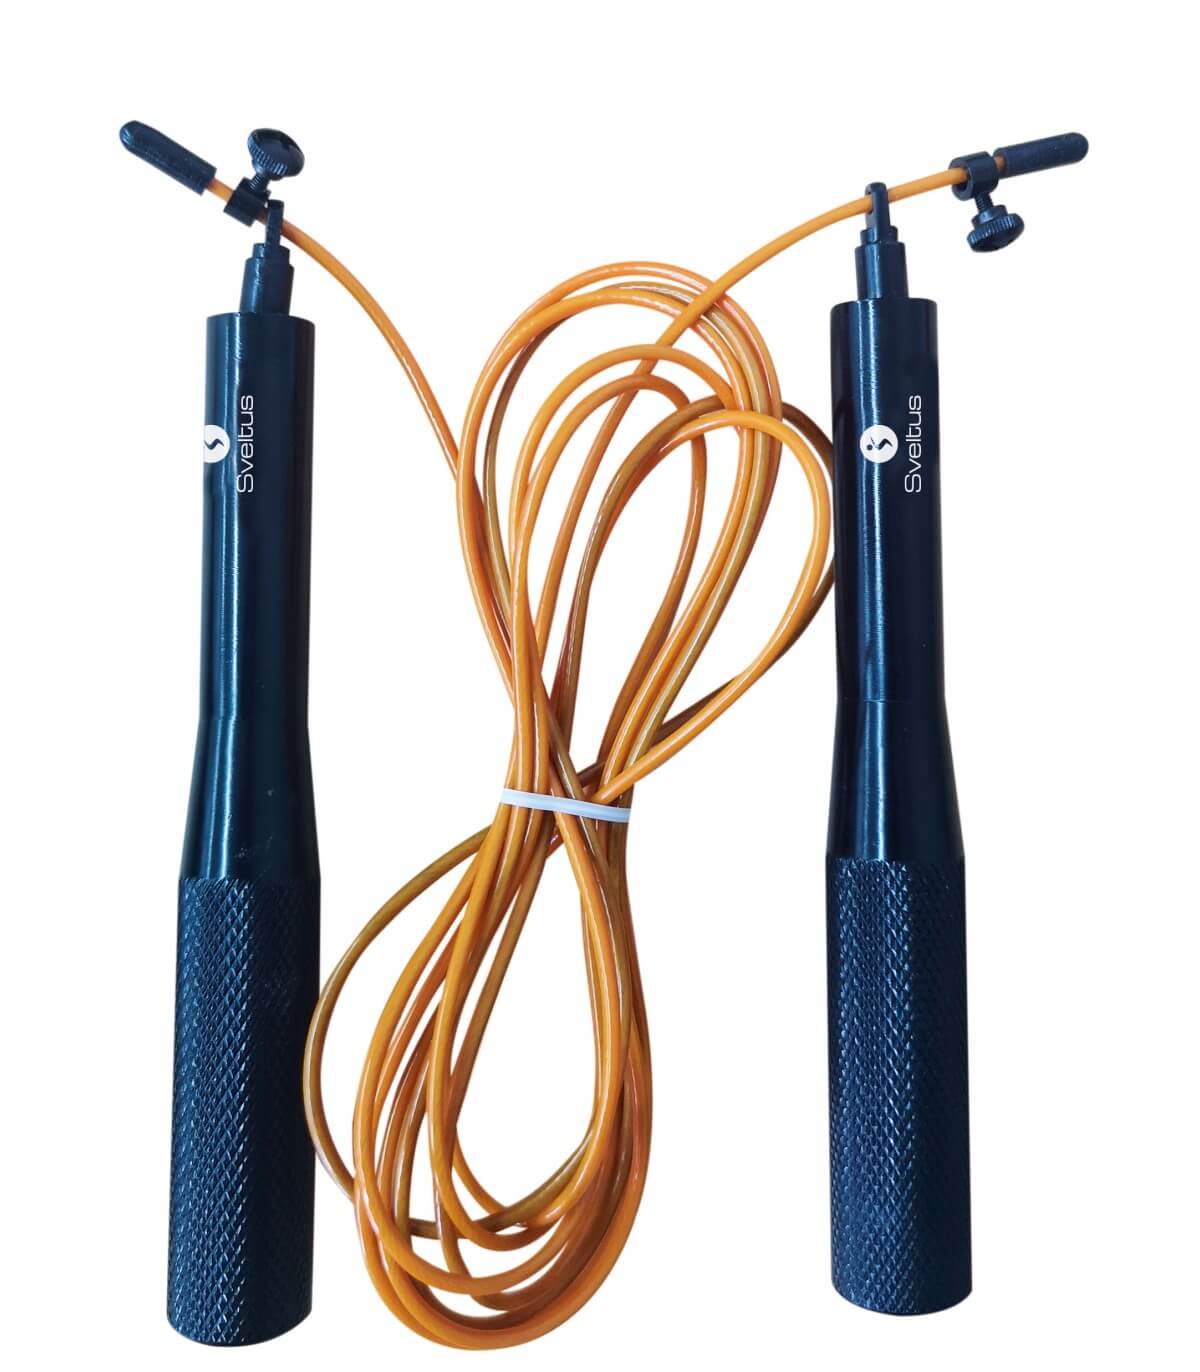 Cuerda para saltar ajustable con empuñaduras de aluminio. Color naranja